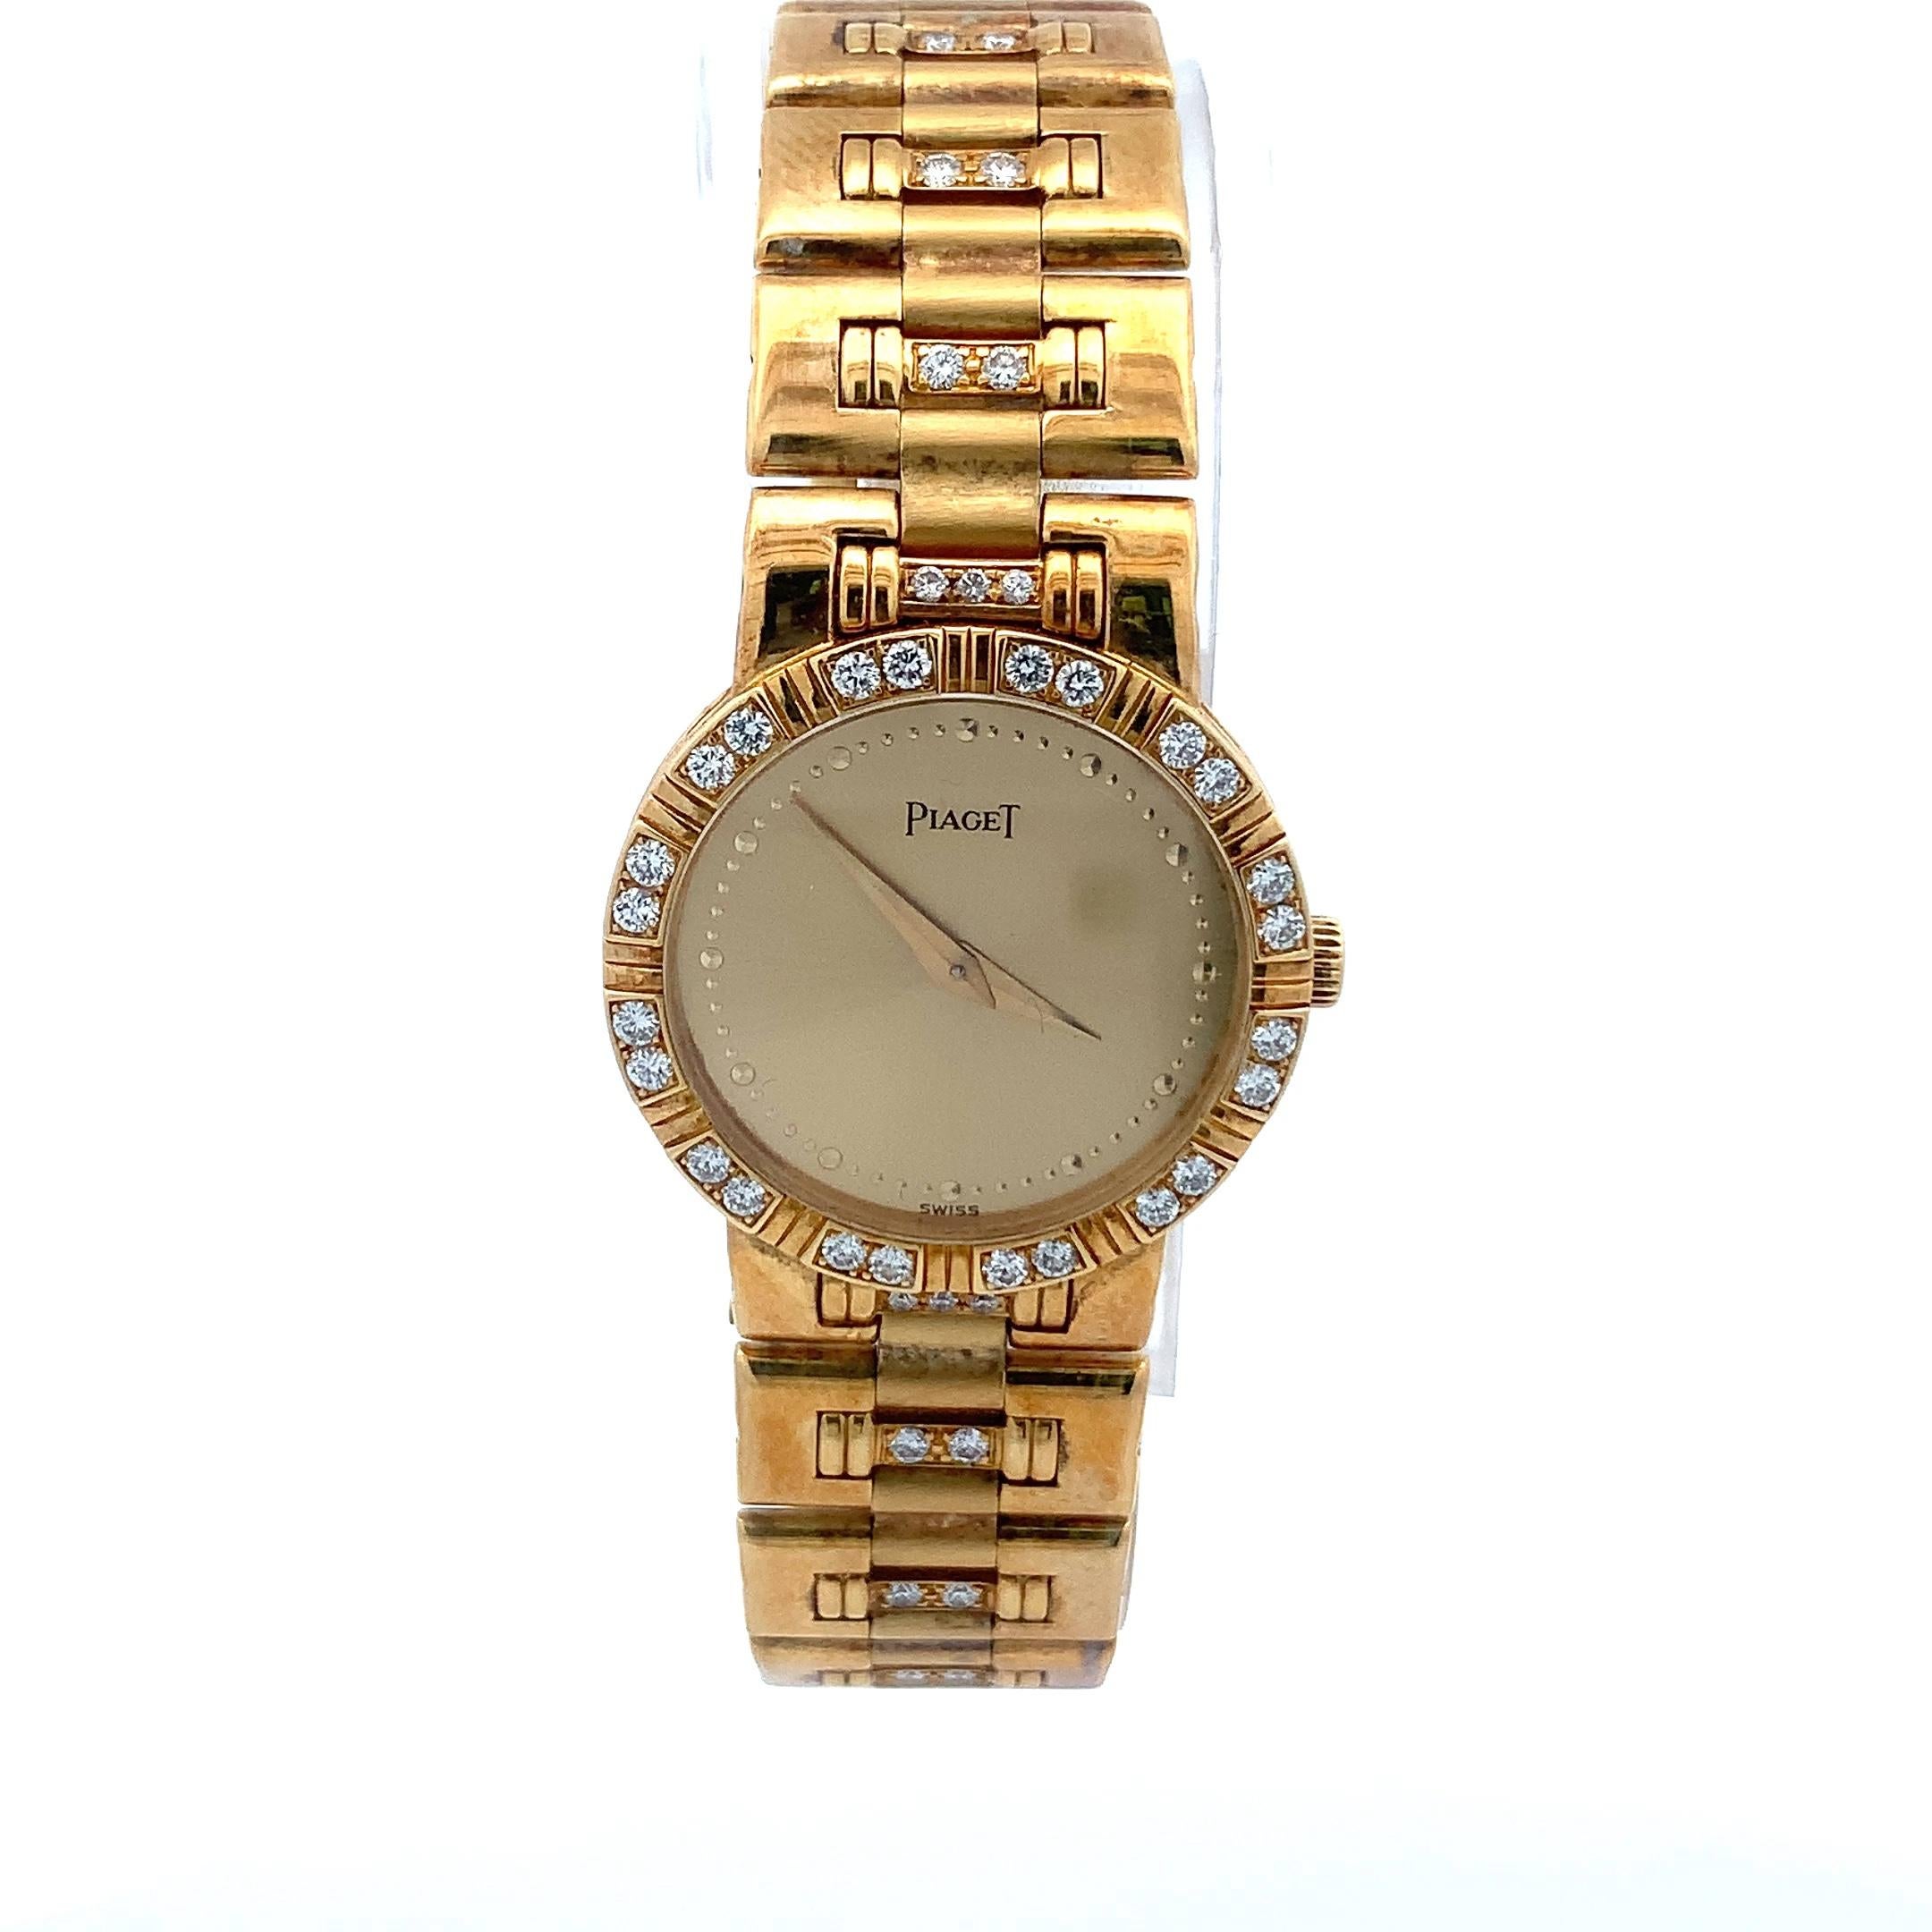 Gebrauchte, sehr gut erhaltene Piaget Lady Dancer 18k Gelbgold-Armbanduhr. Goldfarbenes Zifferblatt, 20-mm-Gehäuse aus 18-karätigem Gelbgold, Diamantlünette, Uhrenbeweger, Armband und Schmuckschließe, Saphirkristallglas und Quarzwerk
Diese Uhr ist